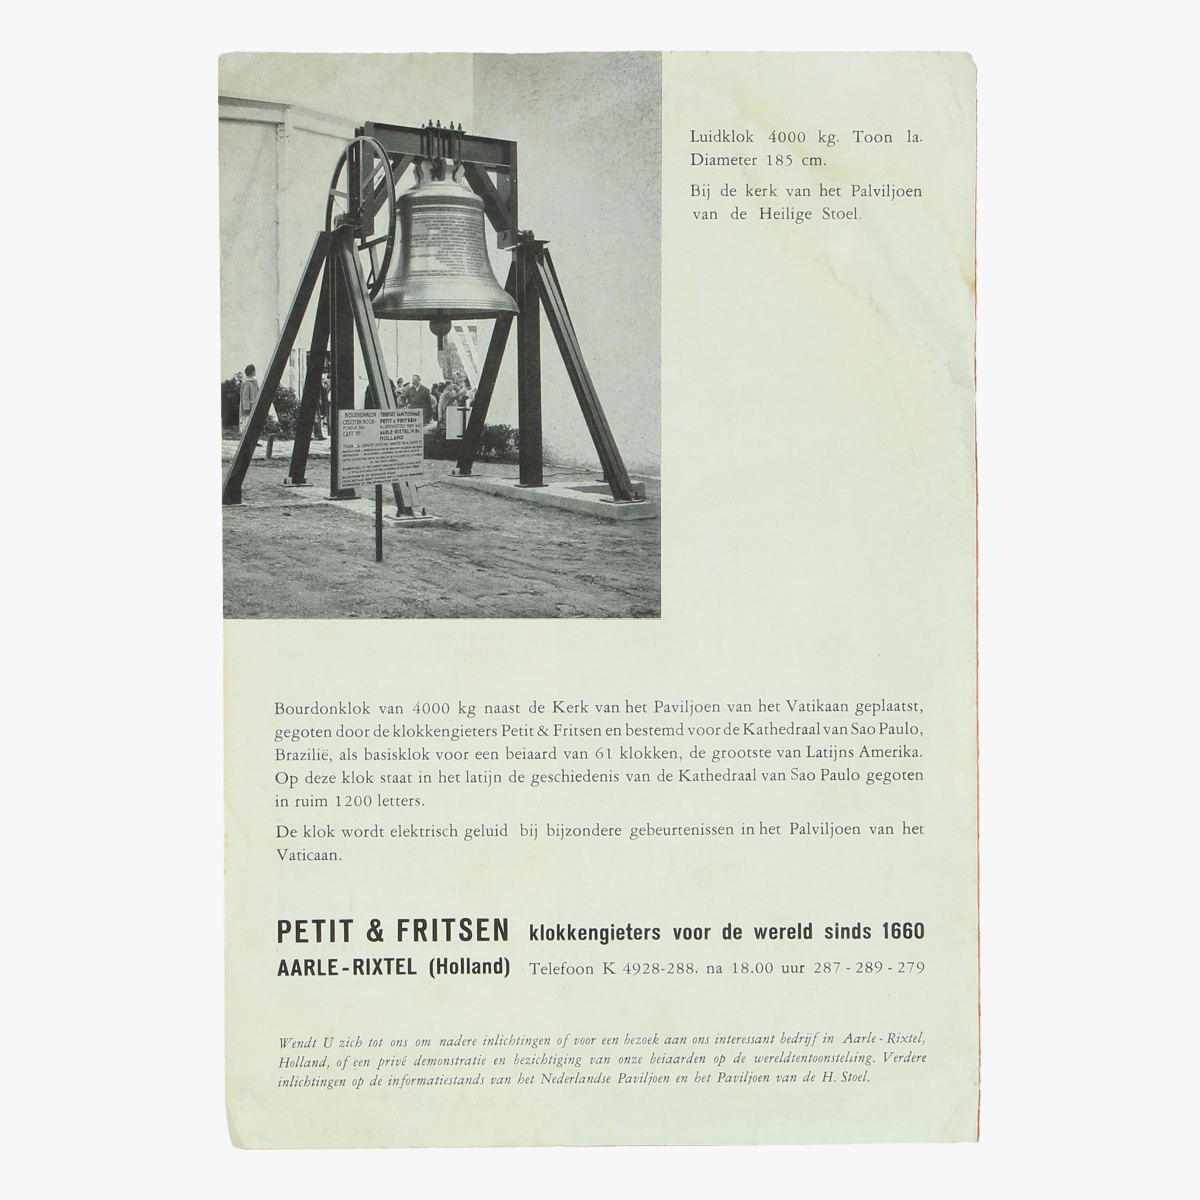 Afbeeldingen van expo 58  folder petit & fritsen klokkengieters